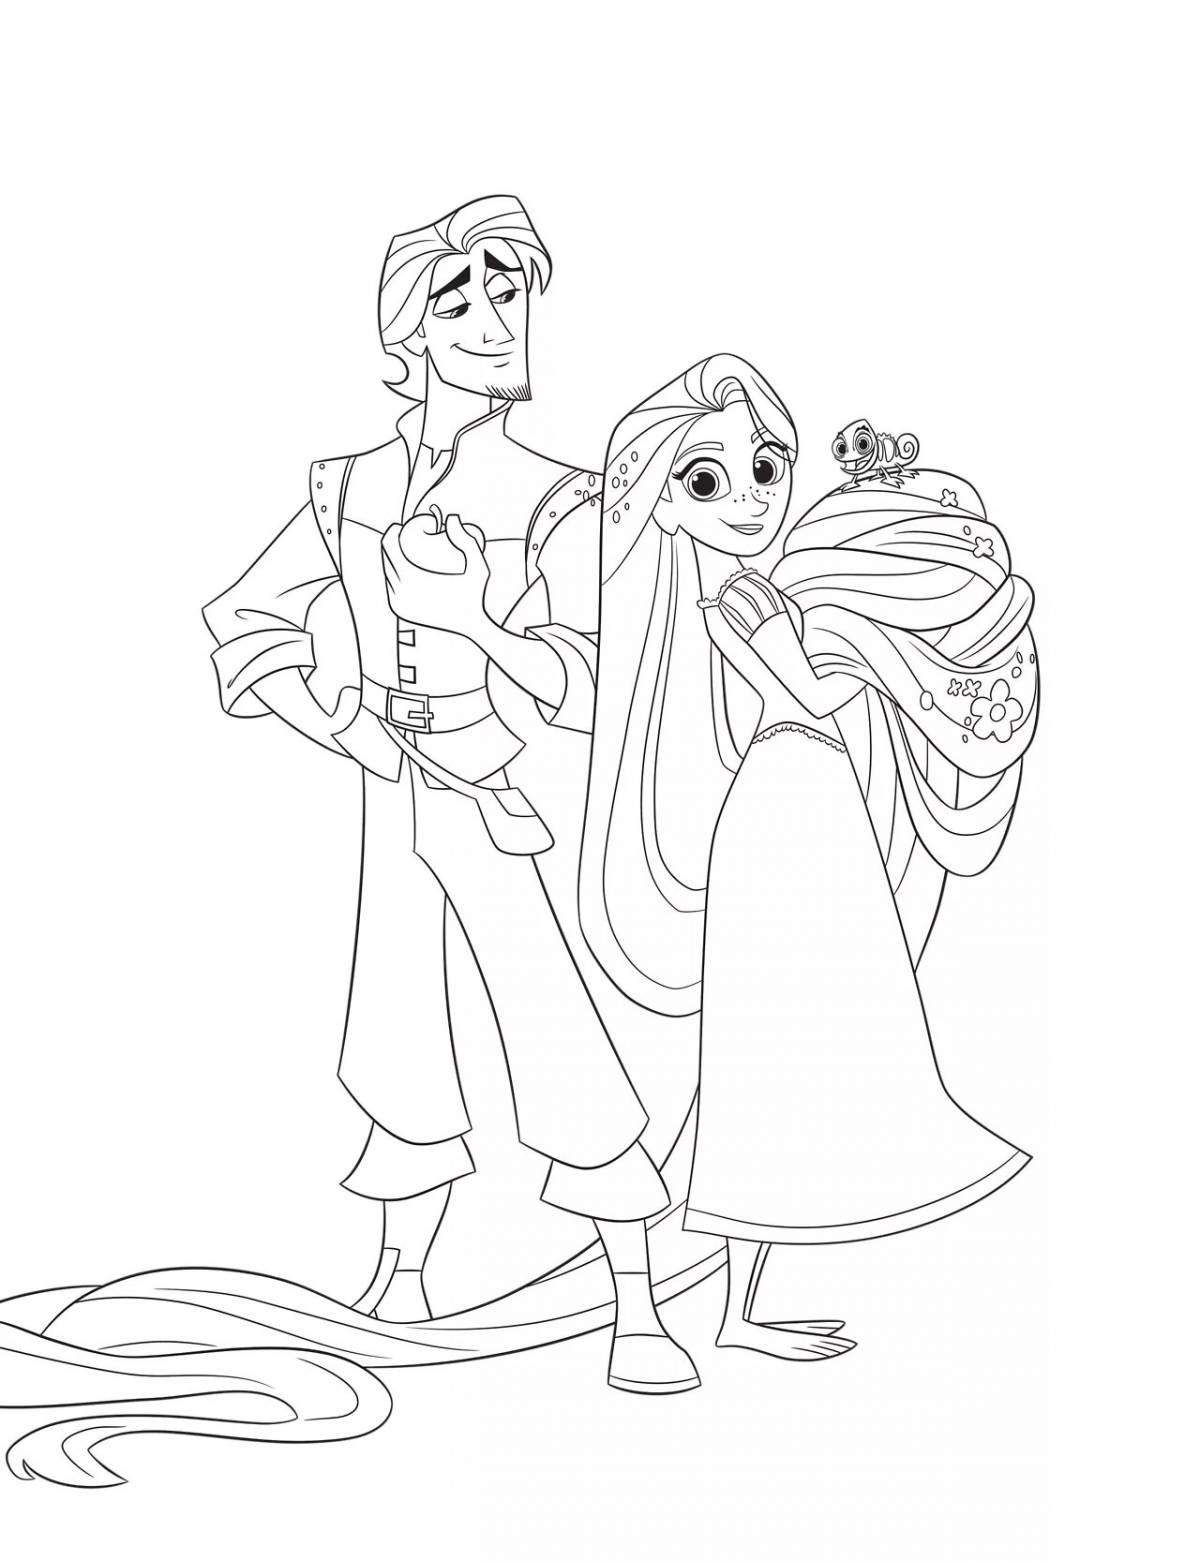 Rapunzel and Eugene #6